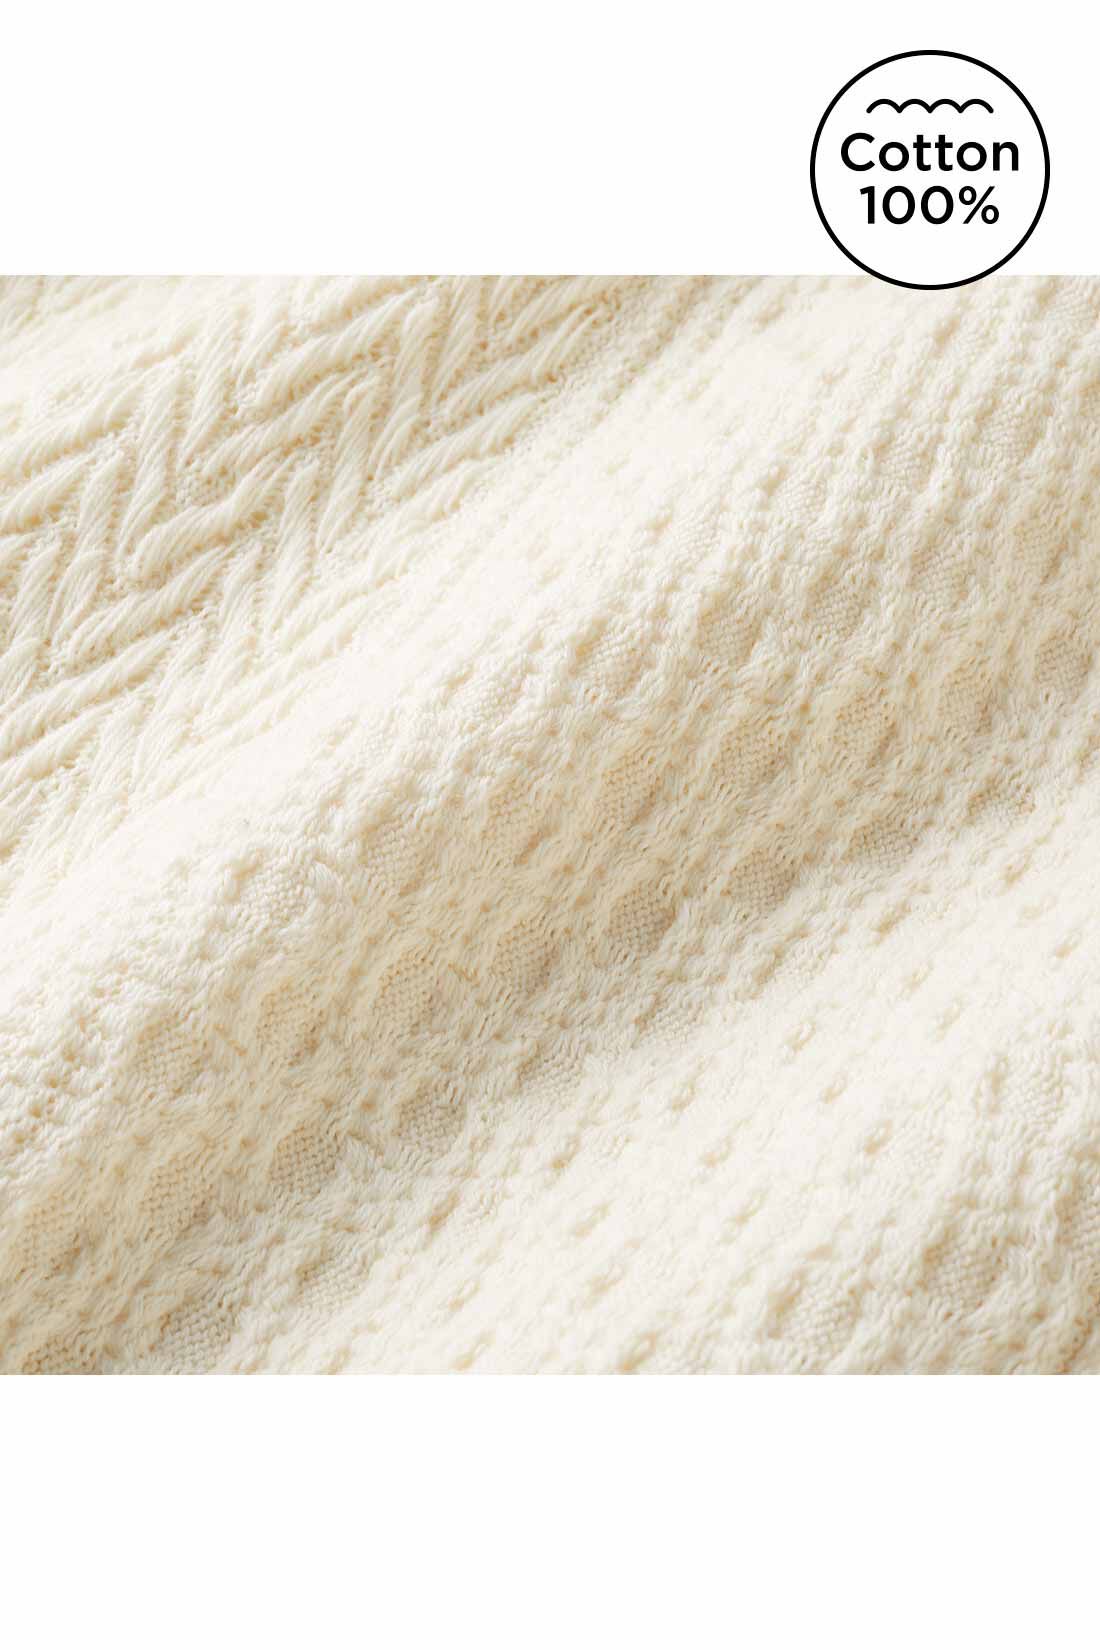 Live in  comfort|Live love cottonプロジェクト　リブ イン コンフォート　編み柄が素敵なオーガニックコットンロングスカート〈アイボリー〉|ニット見えするジャカード編みの、薄くてやわらかいカットソー素材。　※お届けするカラーとは異なります。